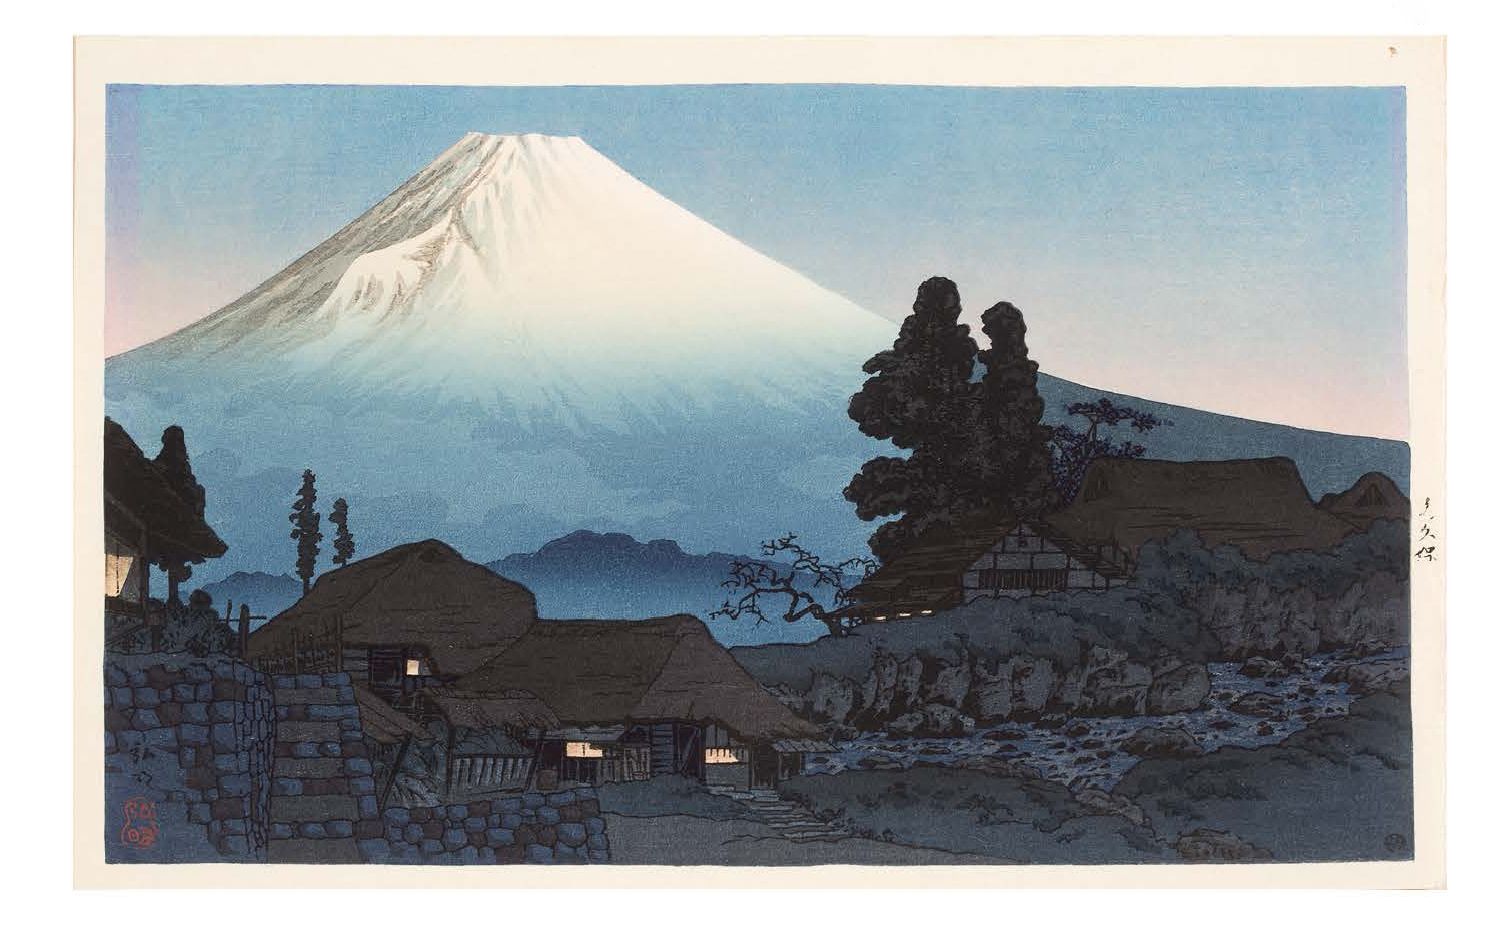 JAPON VERS 1938 Monte Fuji desde Mizukubo
Grabado que representa el Monte Fuji d&hellip;